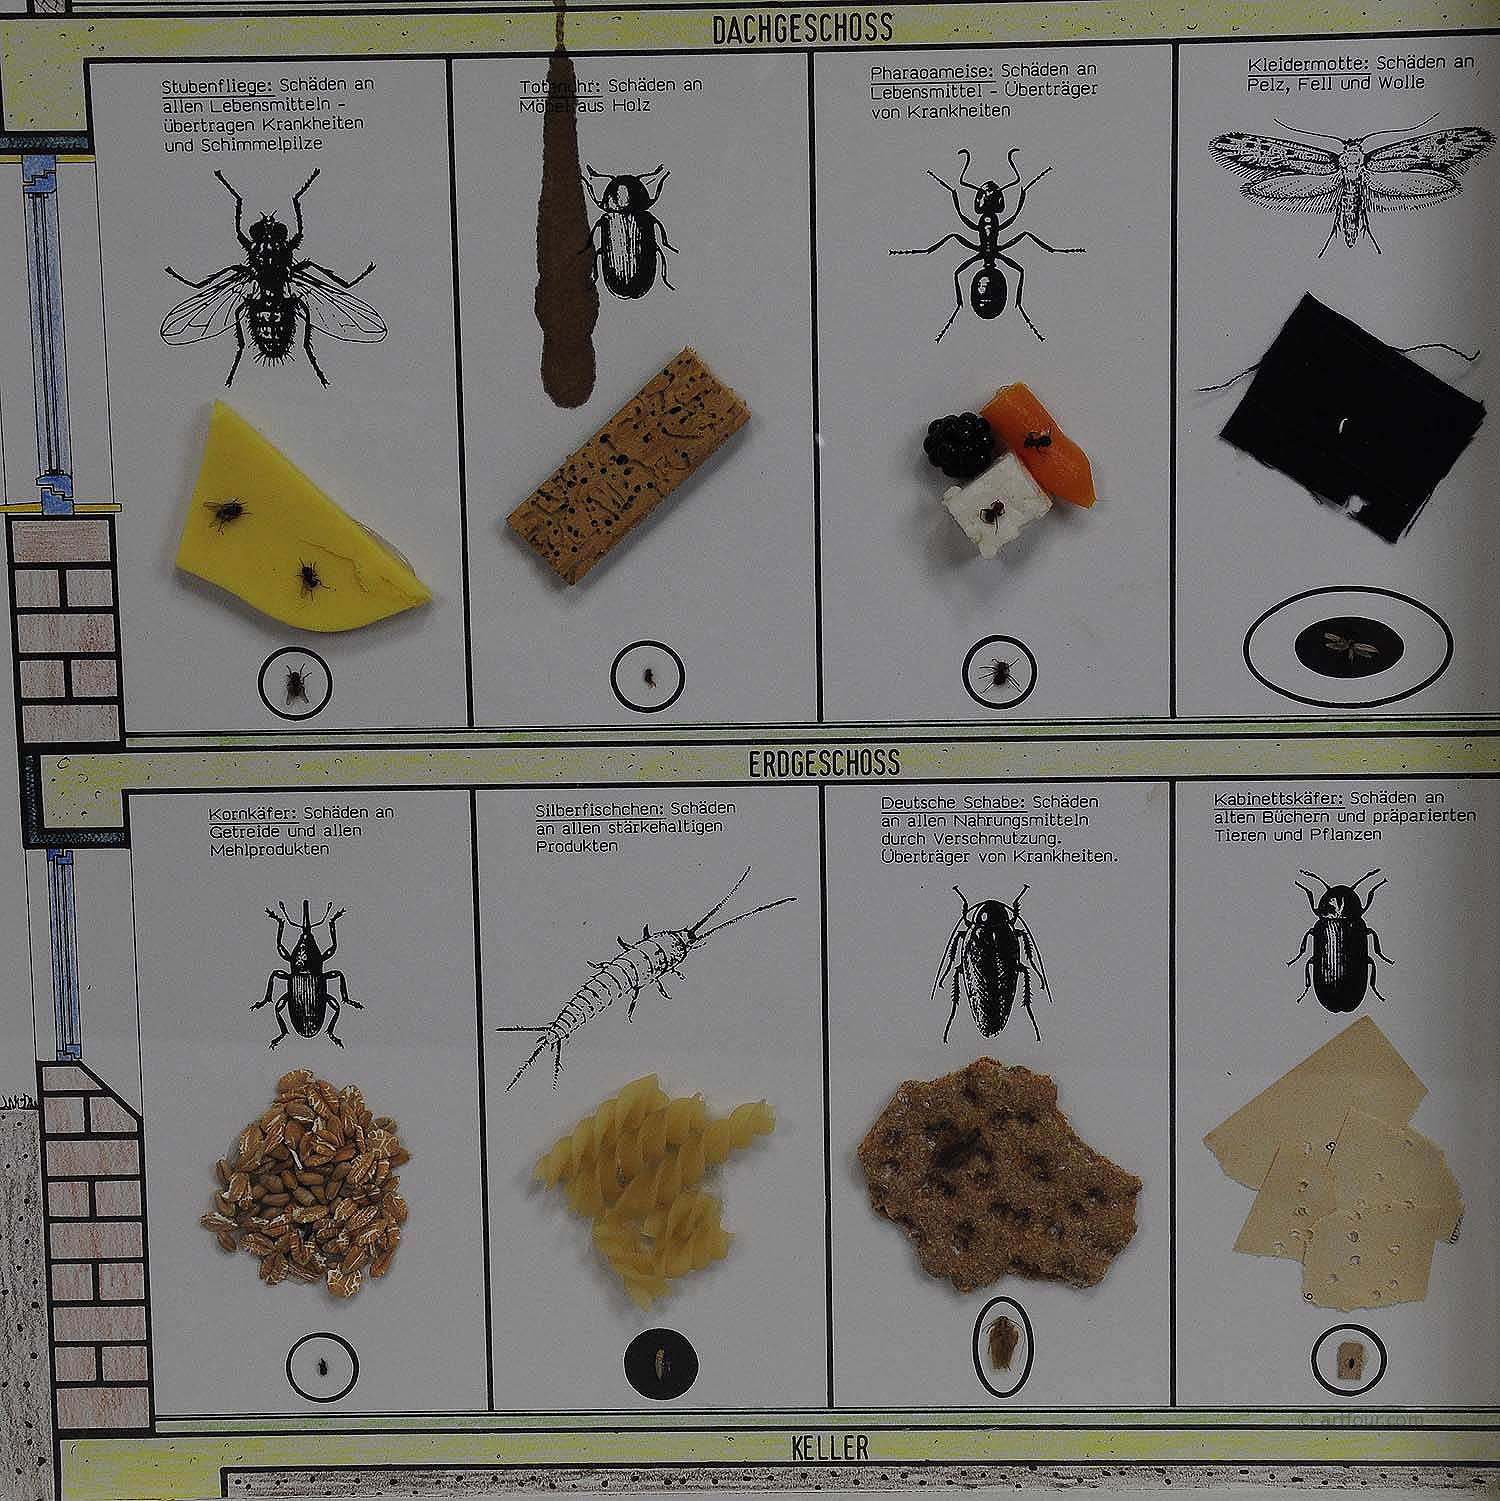 Great Vintage School Teaching Display of Household Pests